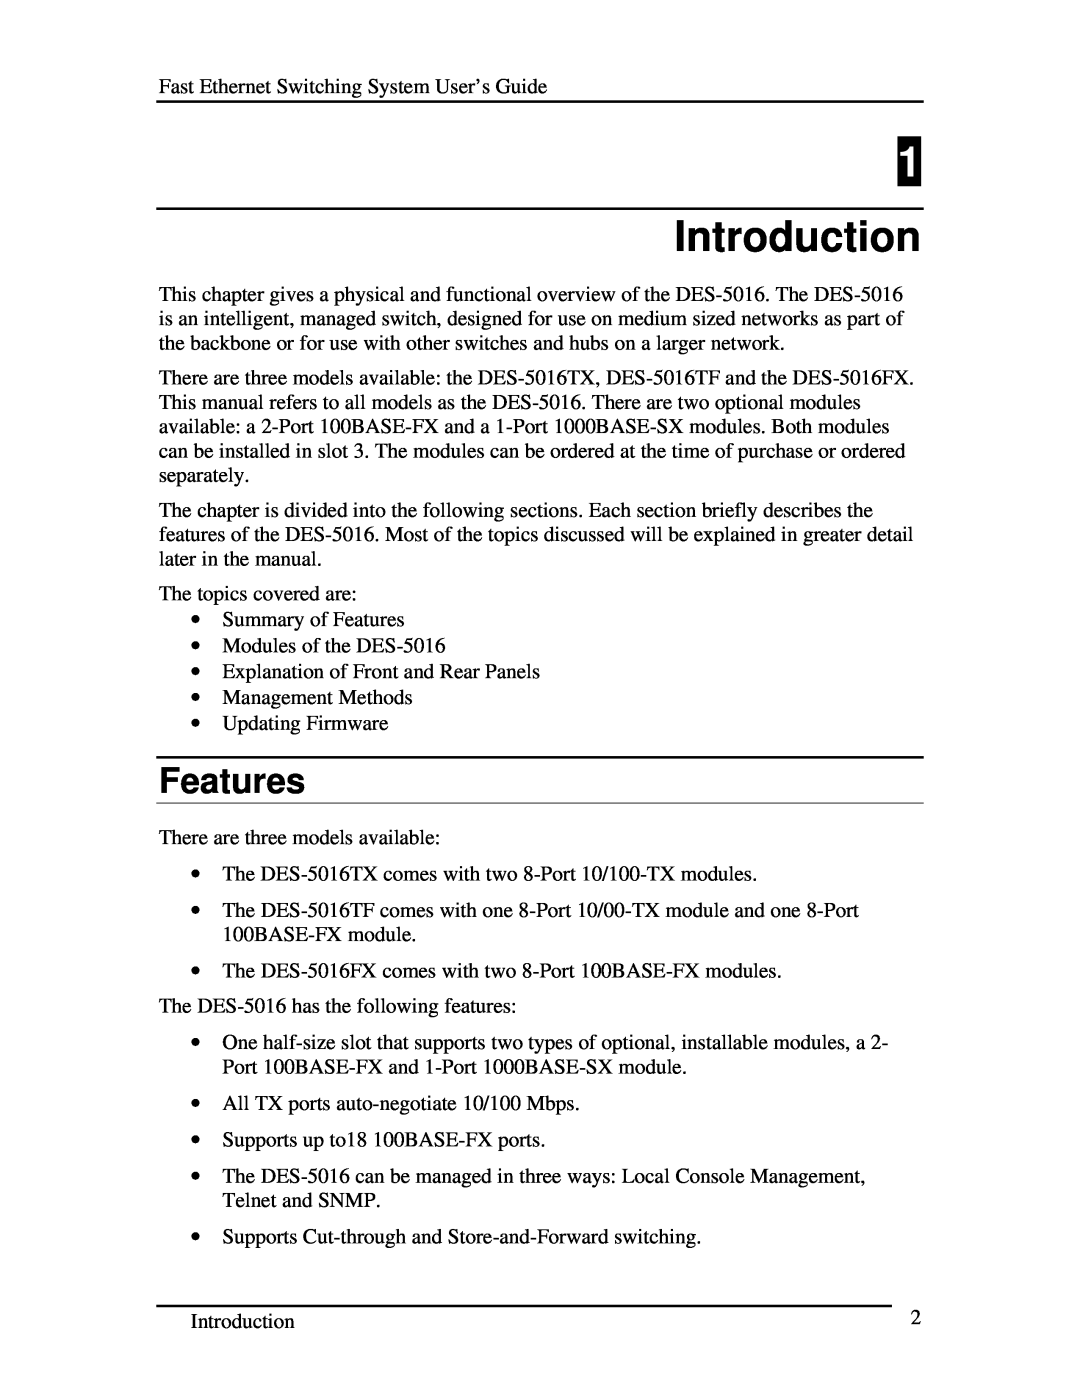 D-Link DES-5016 manual Introduction, Features 